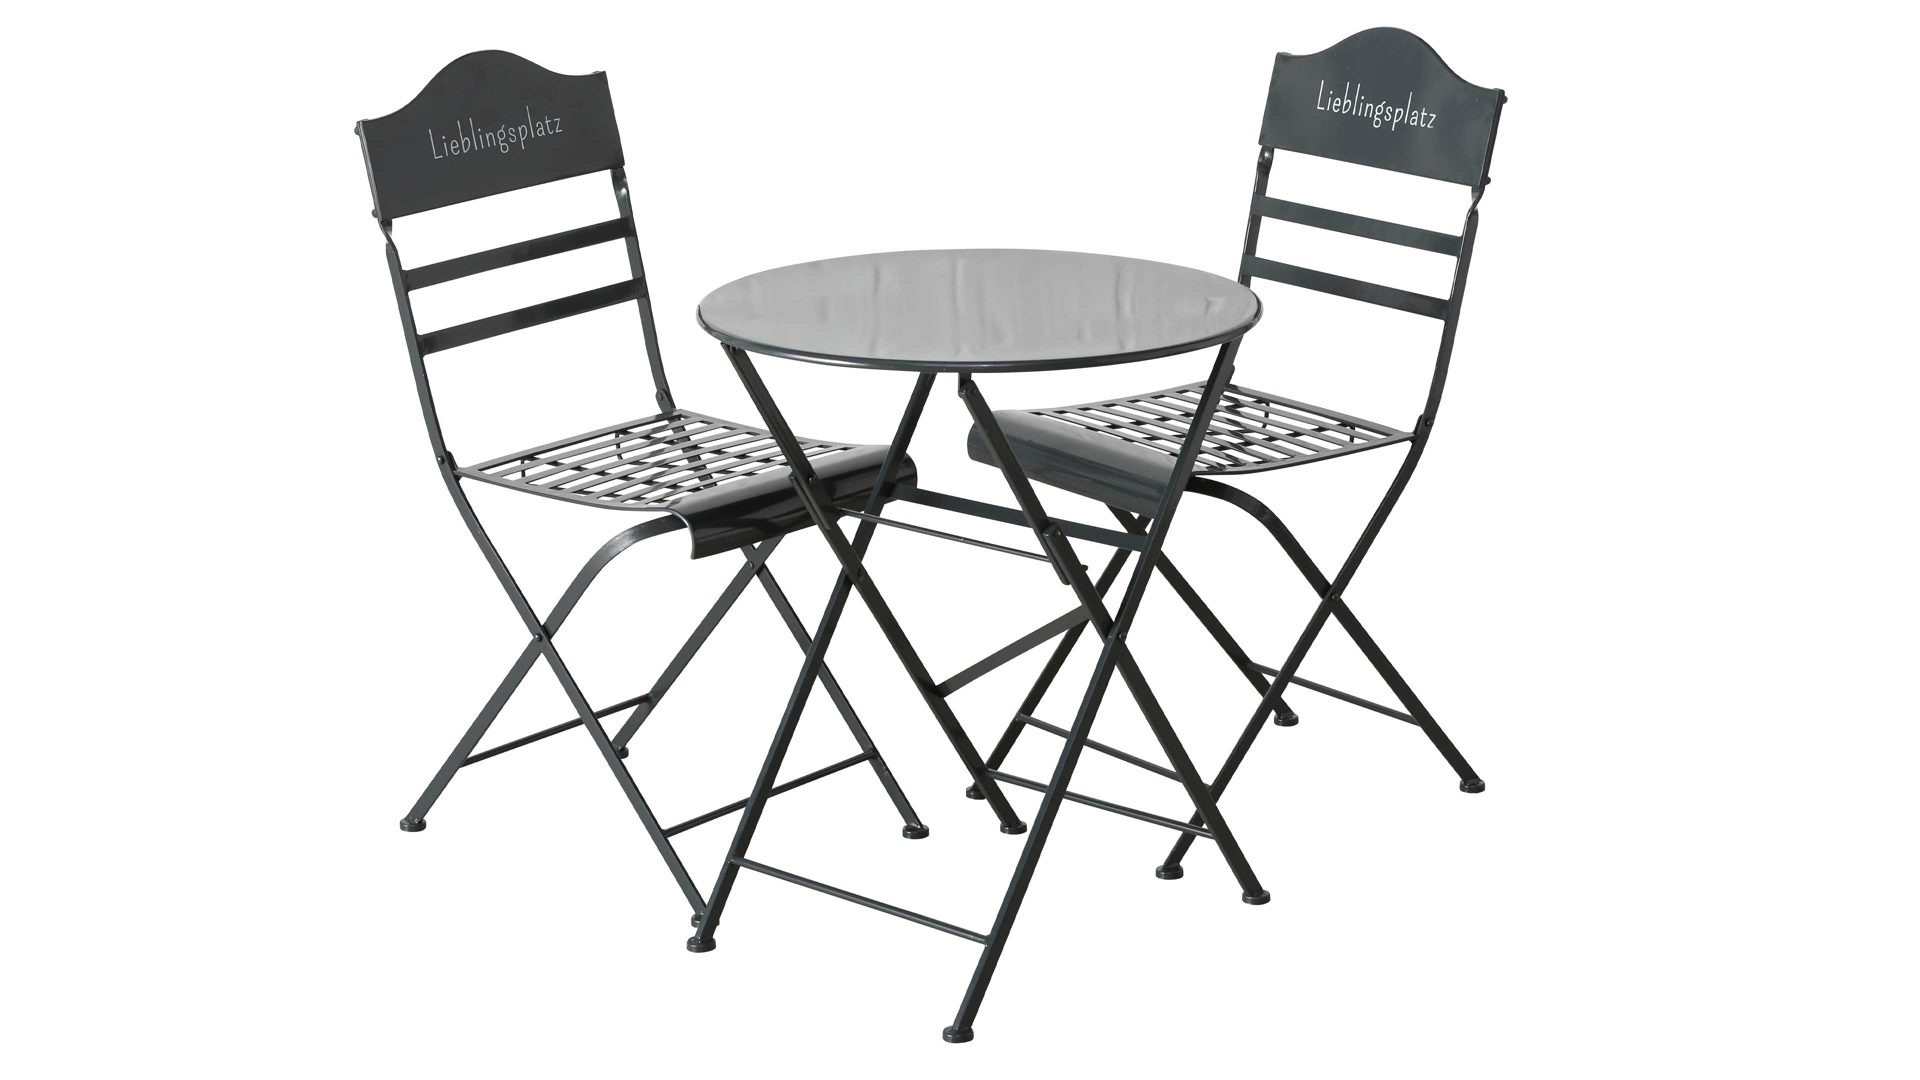 Tisch-Set Boltze aus Metall in Grau Eisen-Sitzgruppe Lieblingsplatz dunkelgraues Eisen – dreiteilig